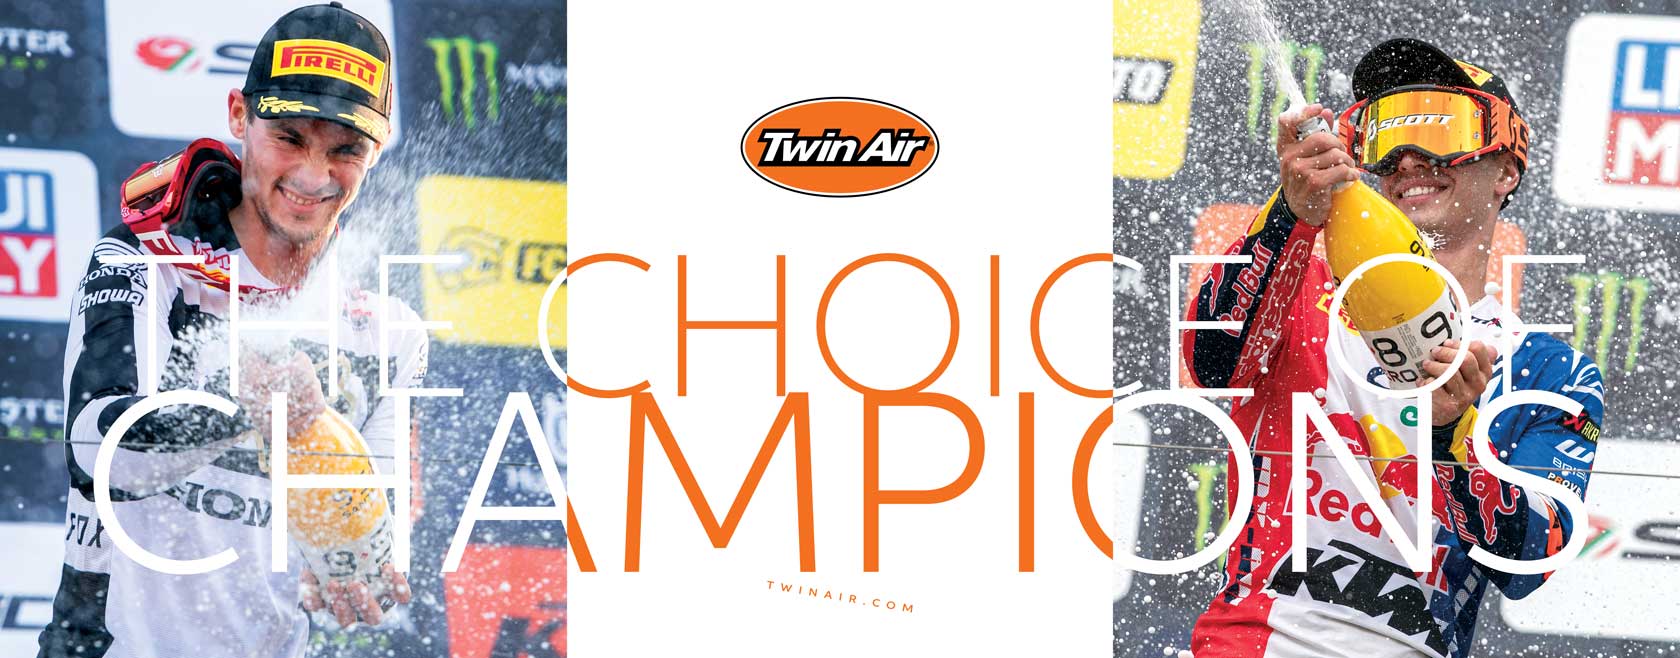 Twin Air MXGP race banner